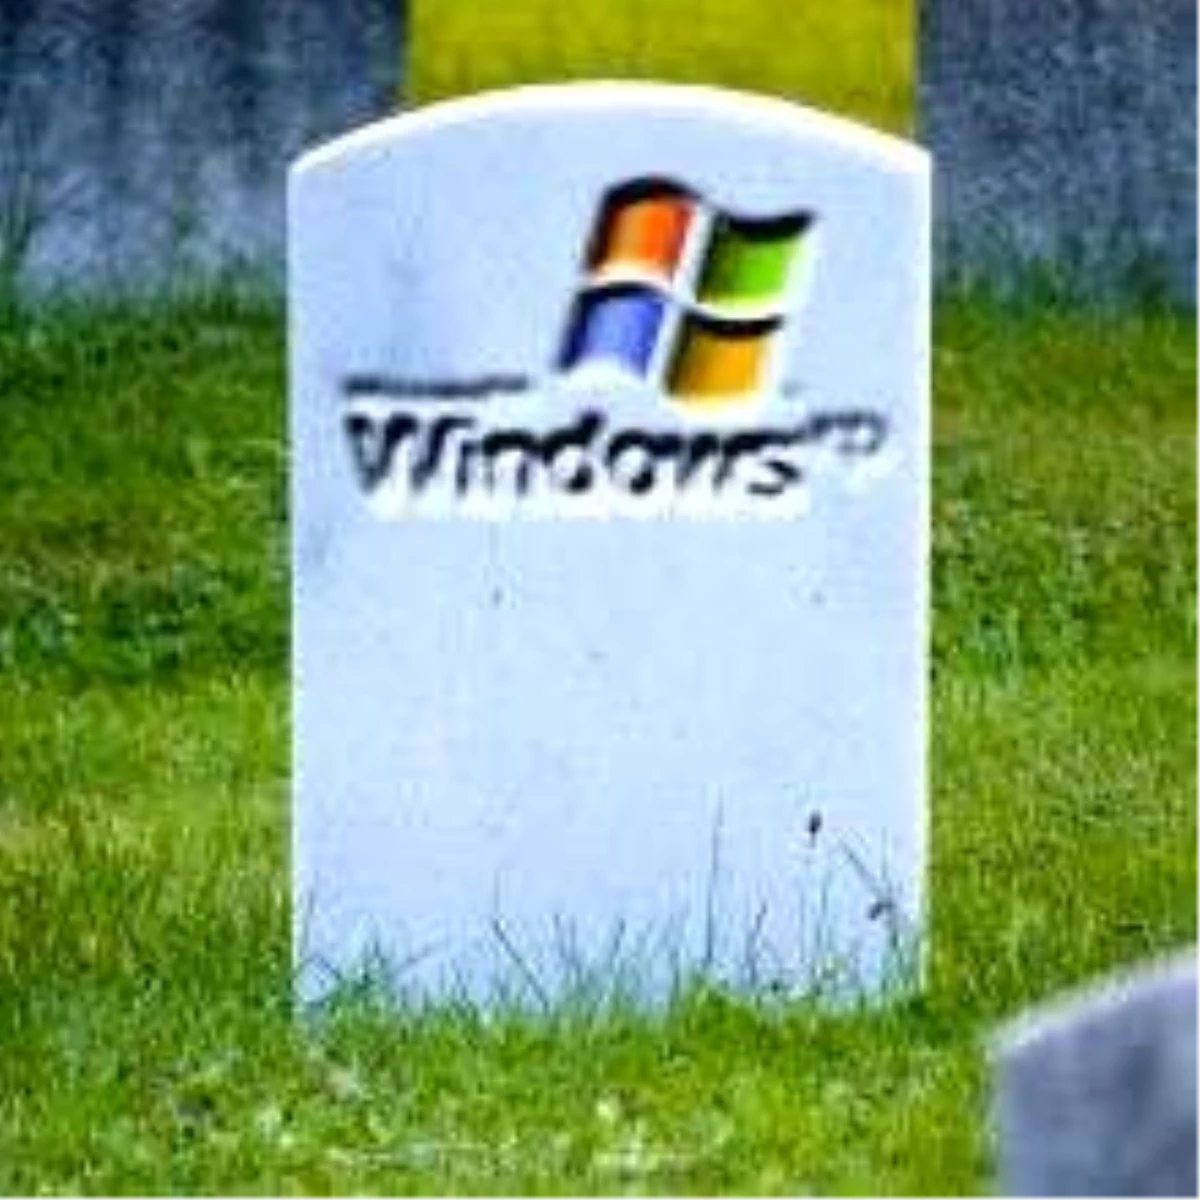 Windows Xp Tarayıcısız Kaldı!